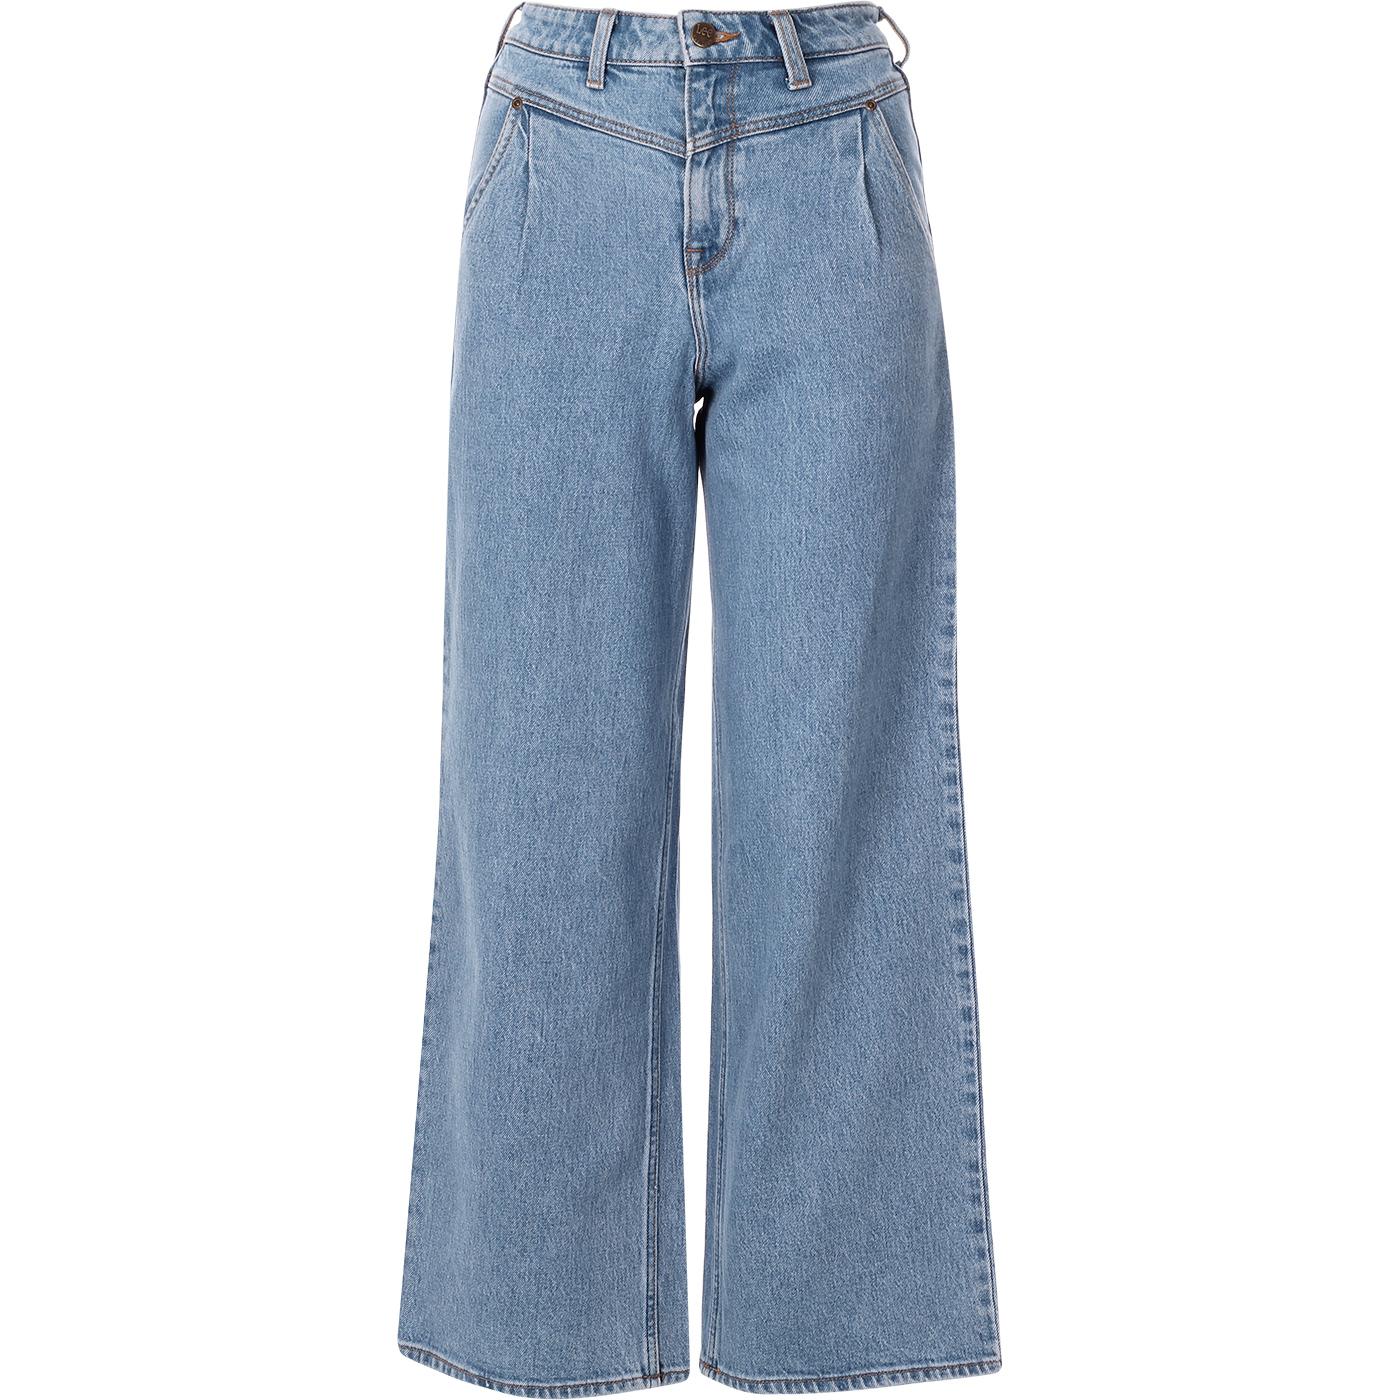 Stella LEE JEANS Women's A-Line Yoke Jeans (LS)